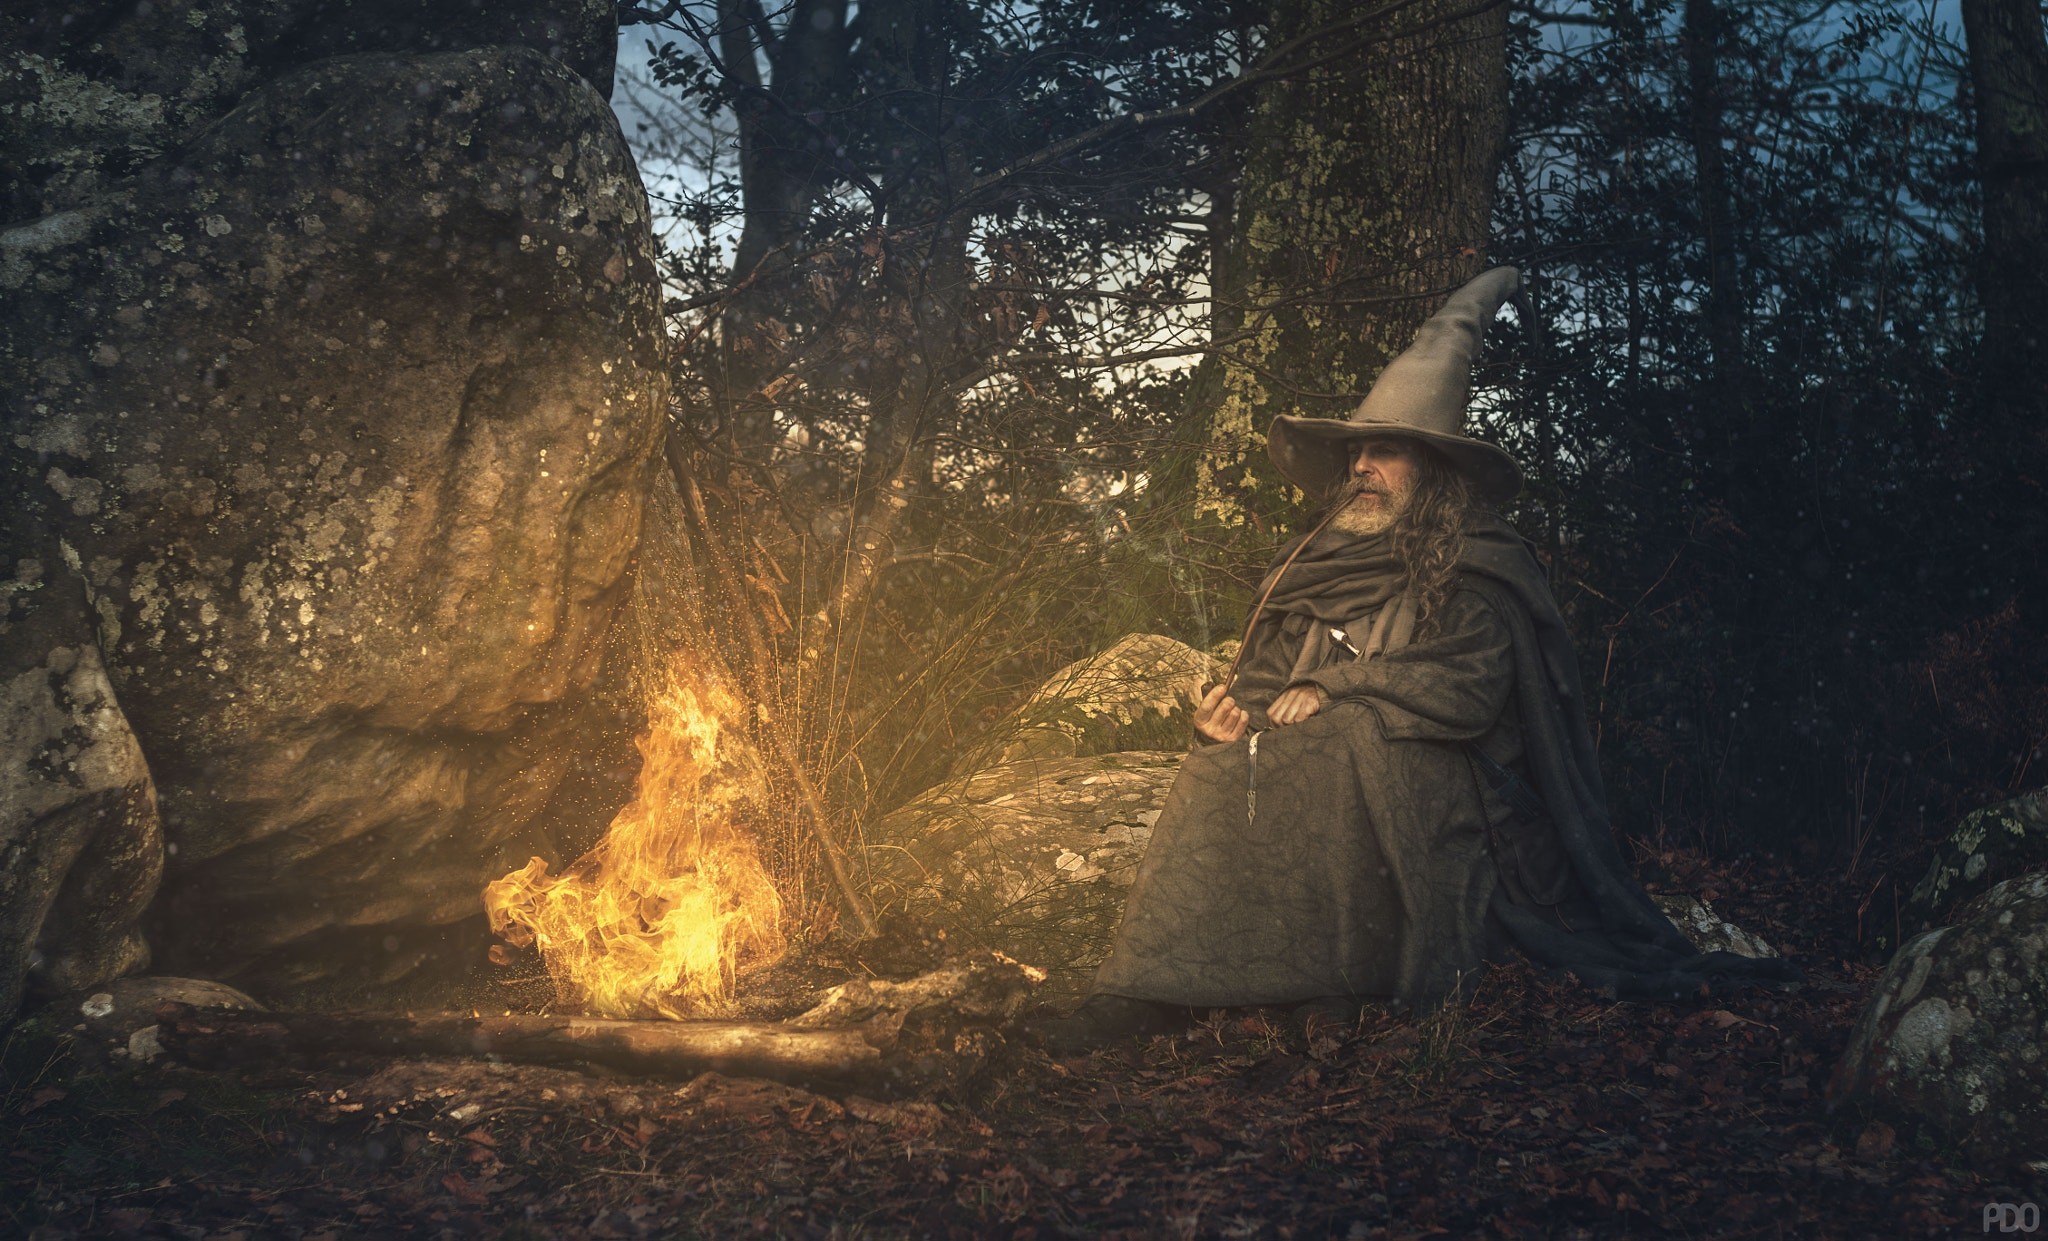 People 2048x1241 Priscilla DO fantasy art men wizard bonfires campfire beard gray hair cosplay Gandalf